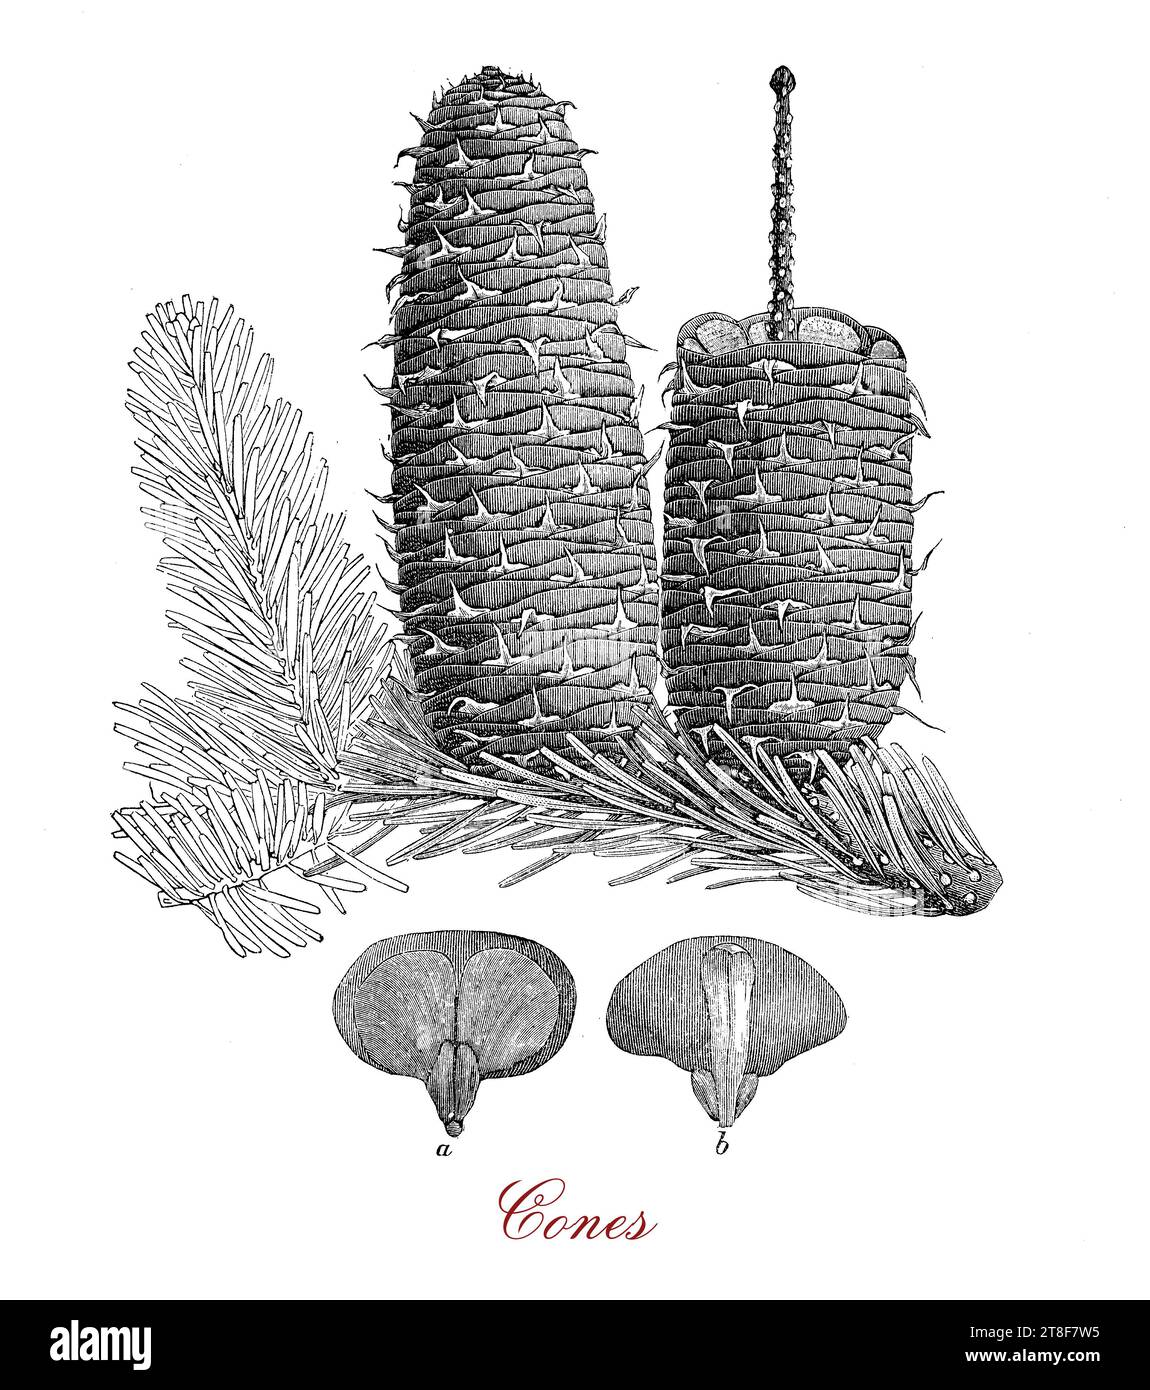 Morfologia del cono di conifere o del cono di pino, organo portante di semi di forma ovoide a globulare con singole piastre legnose chiamate scale intorno a un asse centrale. Foto Stock